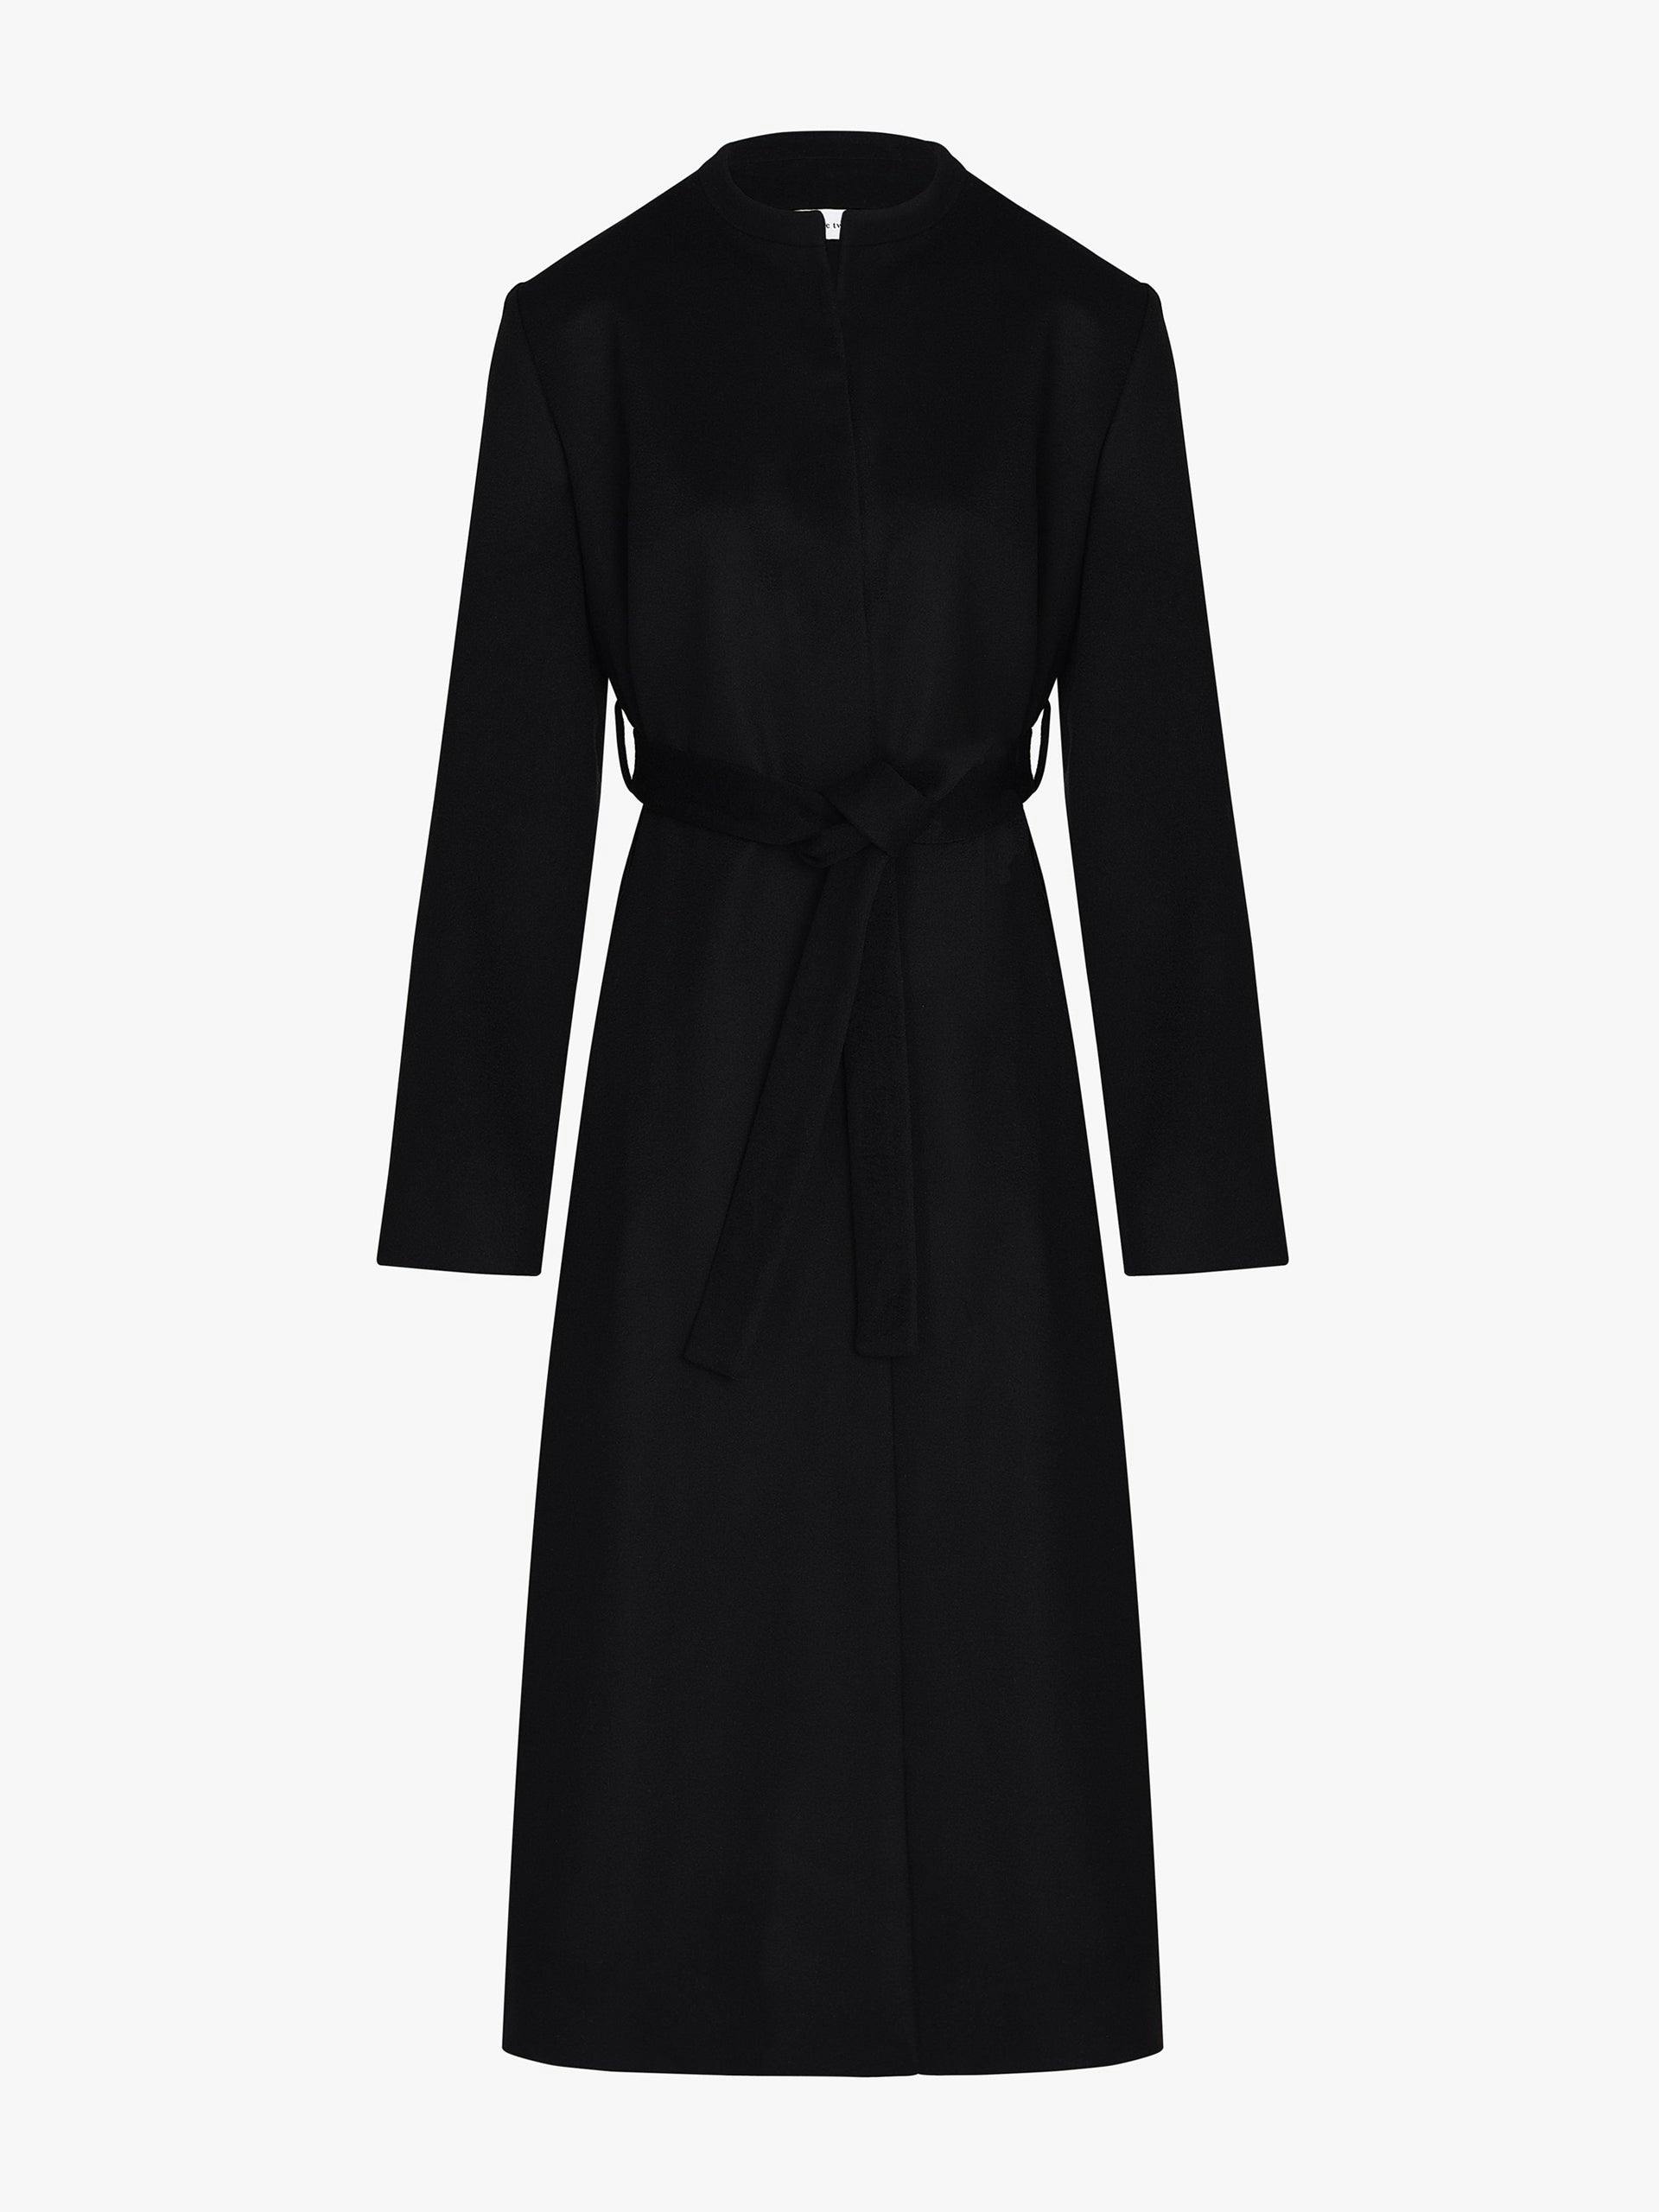 Black belted long cashmere coat